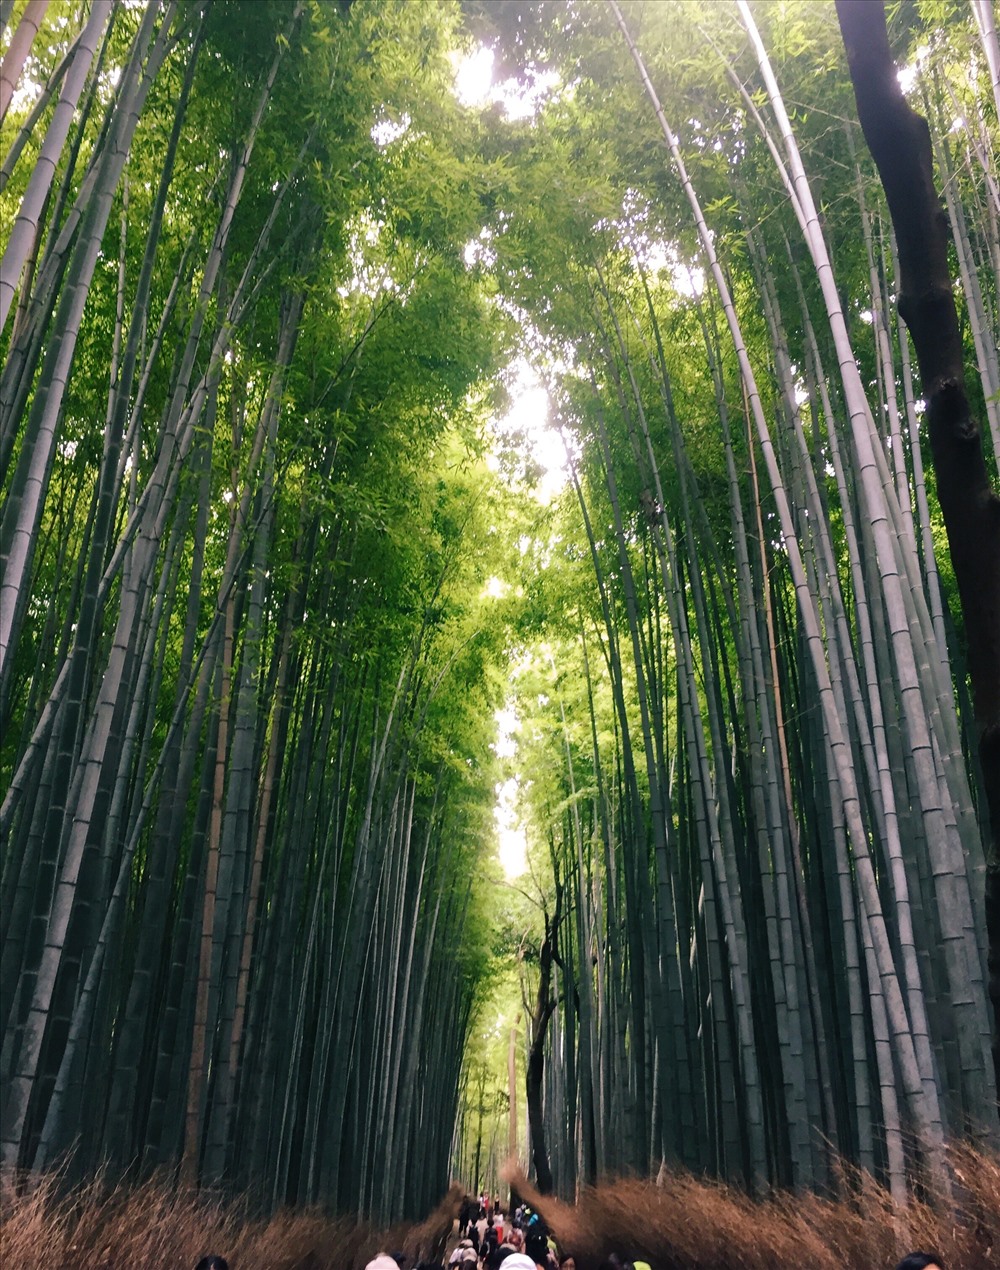 Rừng trúc Sagano nằm ở phía tây bắc lưu vực sông ở Kyoto, Nhật Bản thu hút khách du lịch bởi vẻ đẹp bạt ngàn của hàng ngàn cây trúc xanh và thẳng đều tăm tắp. Với diện tích 16 km vuông, đây là một trong những môi trường tự nhiên đẹp nhất ở Nhật Bản, không chỉ vì vẻ đẹp lãng mạn của cảnh sắc của nó mà còn bởi những âm thanh được tạo nên từ tiếng gió lao xao, rì rào khi thổi qua rừng tre dày đặc. Ảnh: Linh Gooner